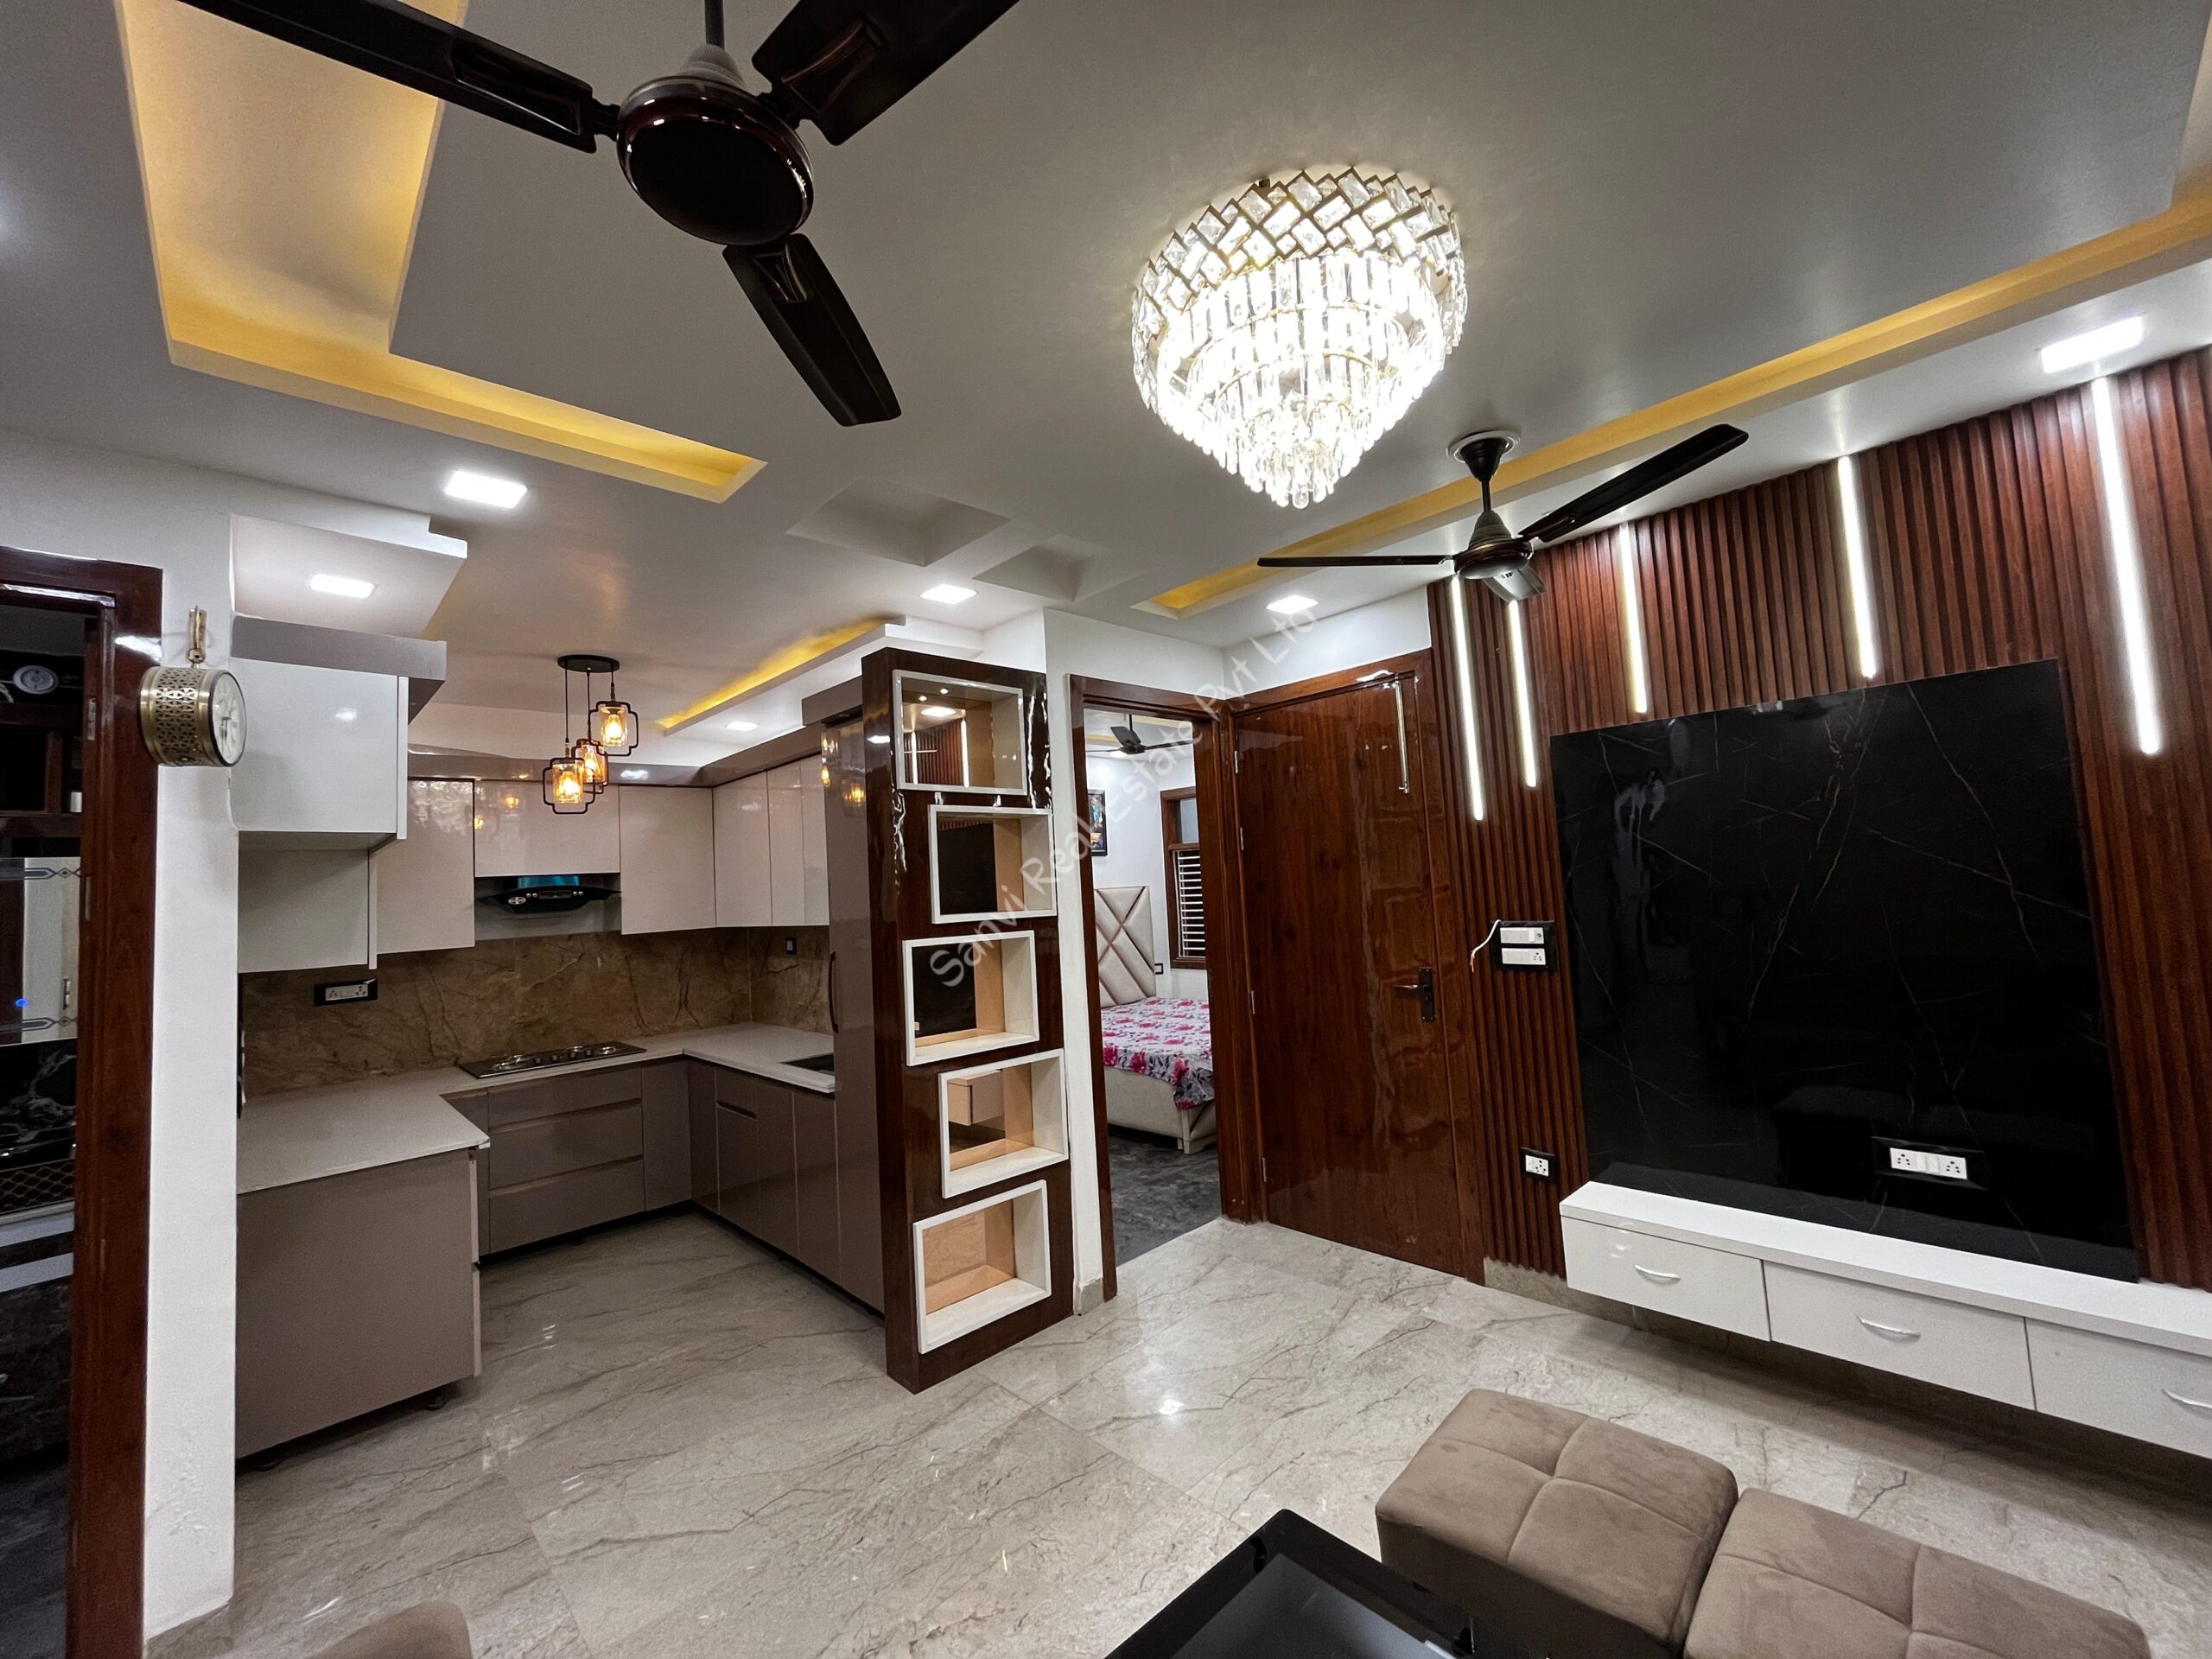 3 BHK Property in Dwarka Mor | Property in Delhi | Sanvi Real Estate